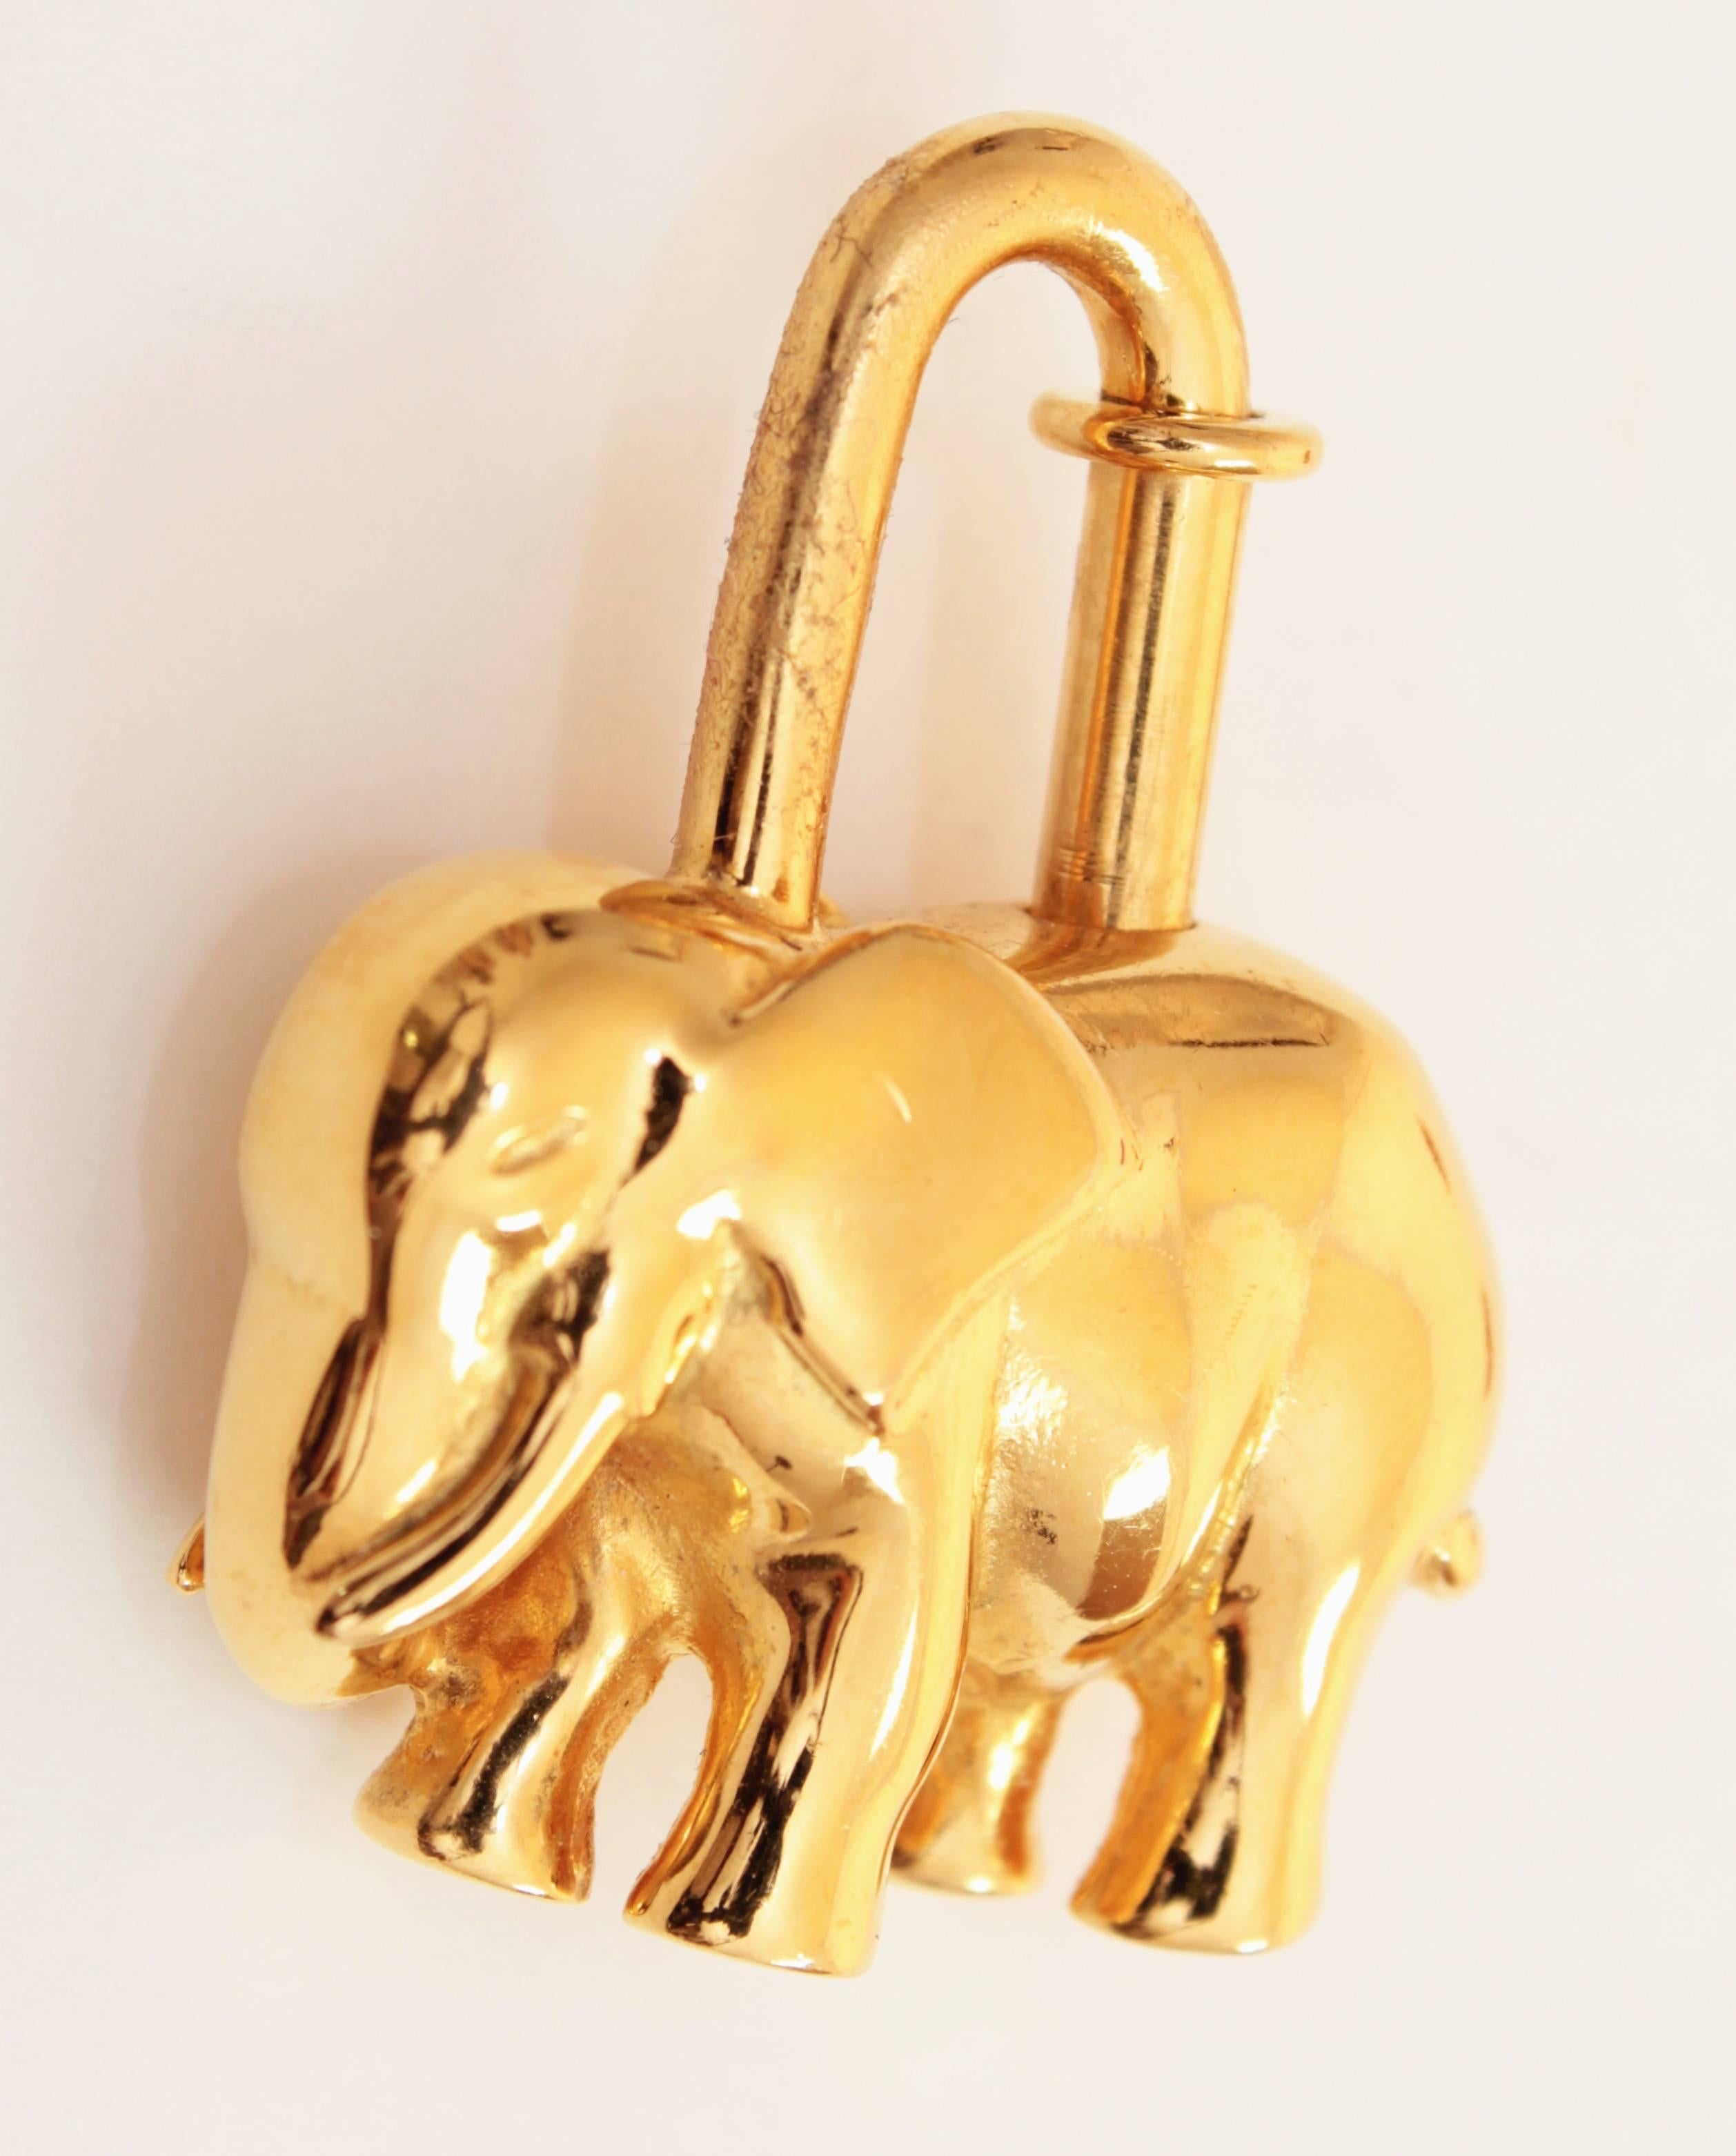 Seltene Hermes Elefant Cadena Charm Schloss vergoldet 1988 + Box 1